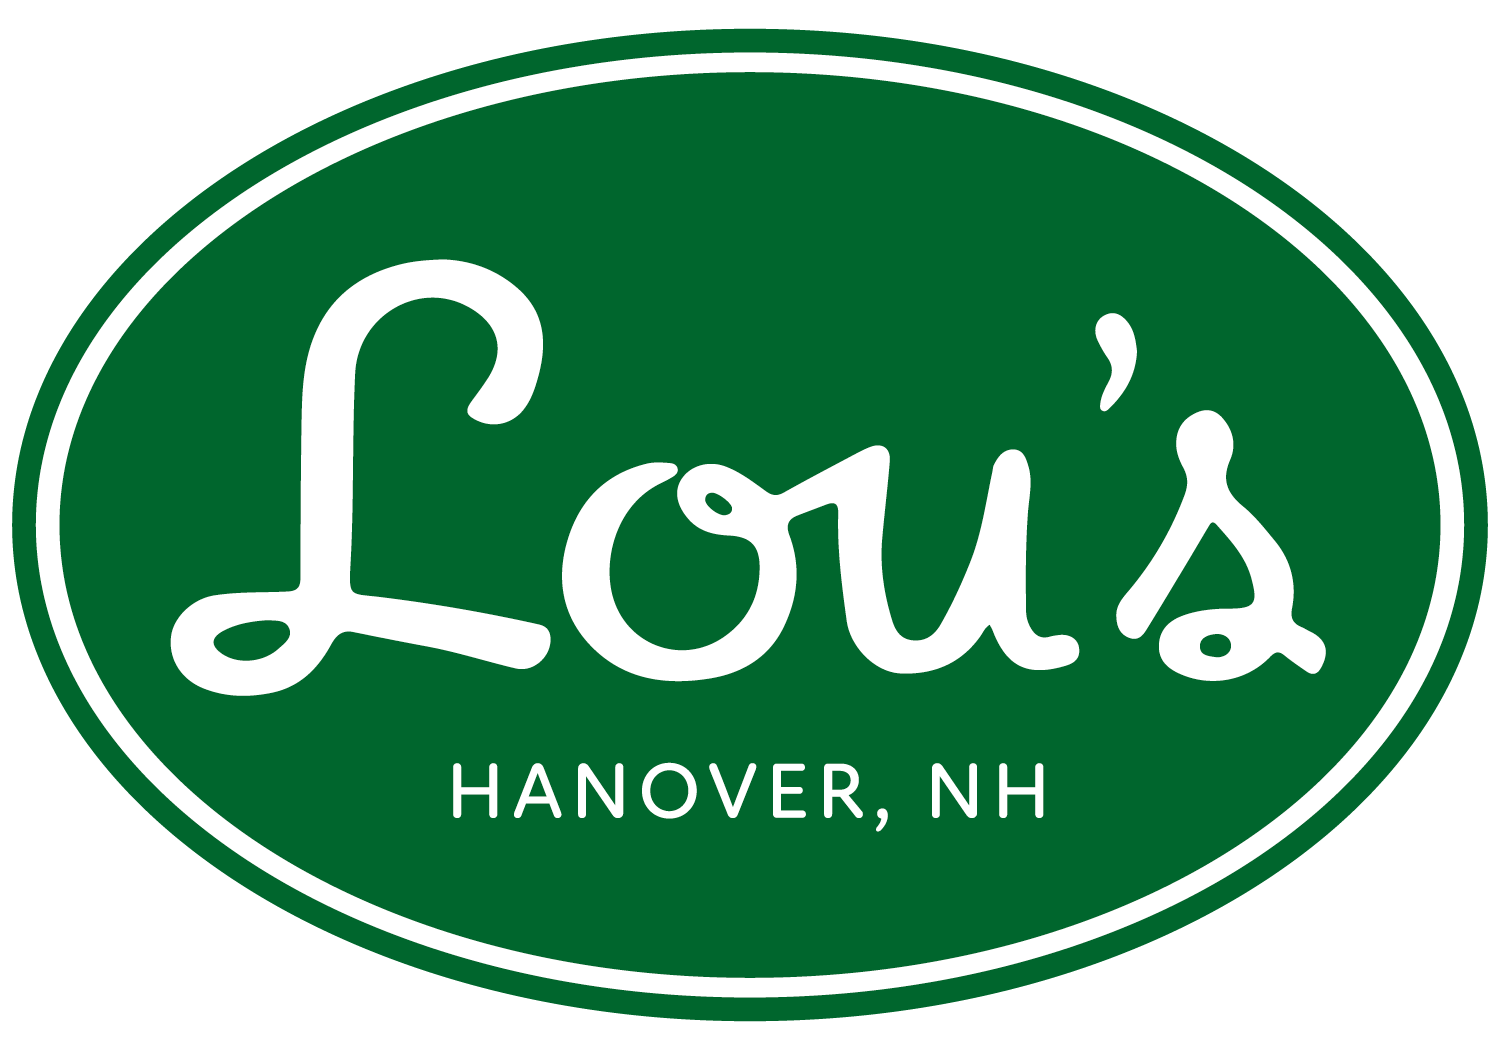 Lou's Restaurant & Bakery